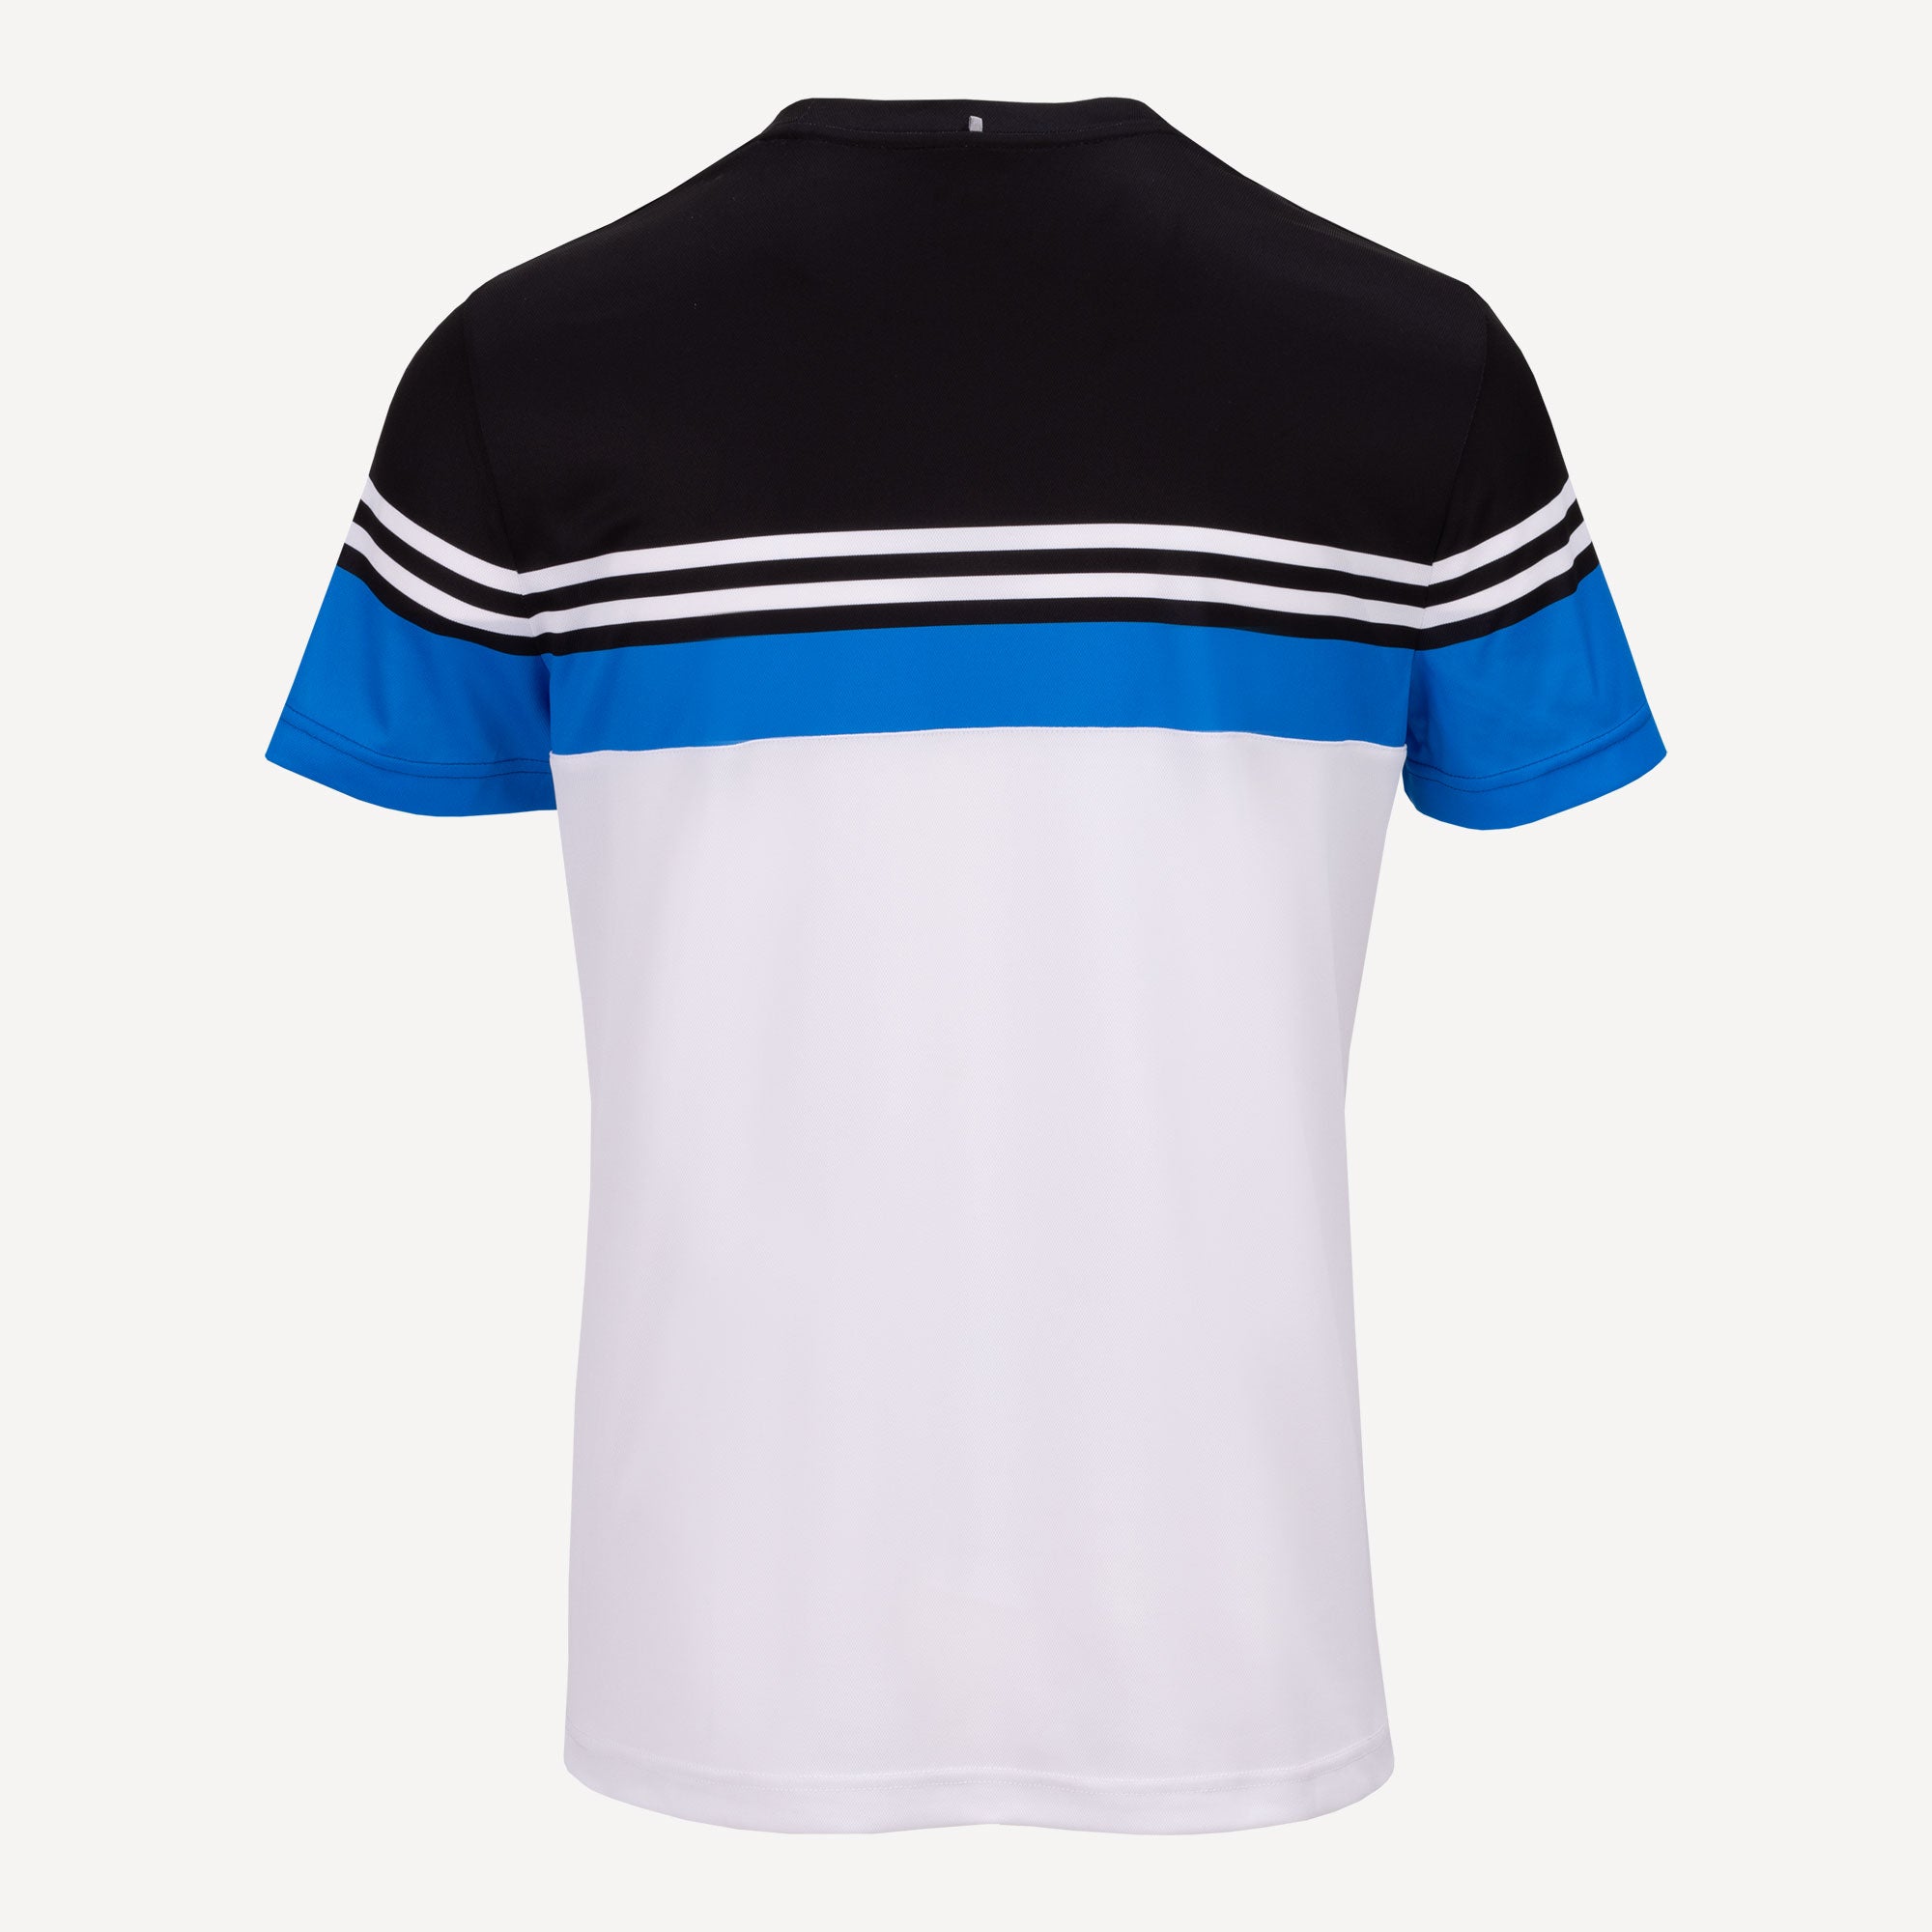 Fila Malte Men's Tennis Shirt White (2)